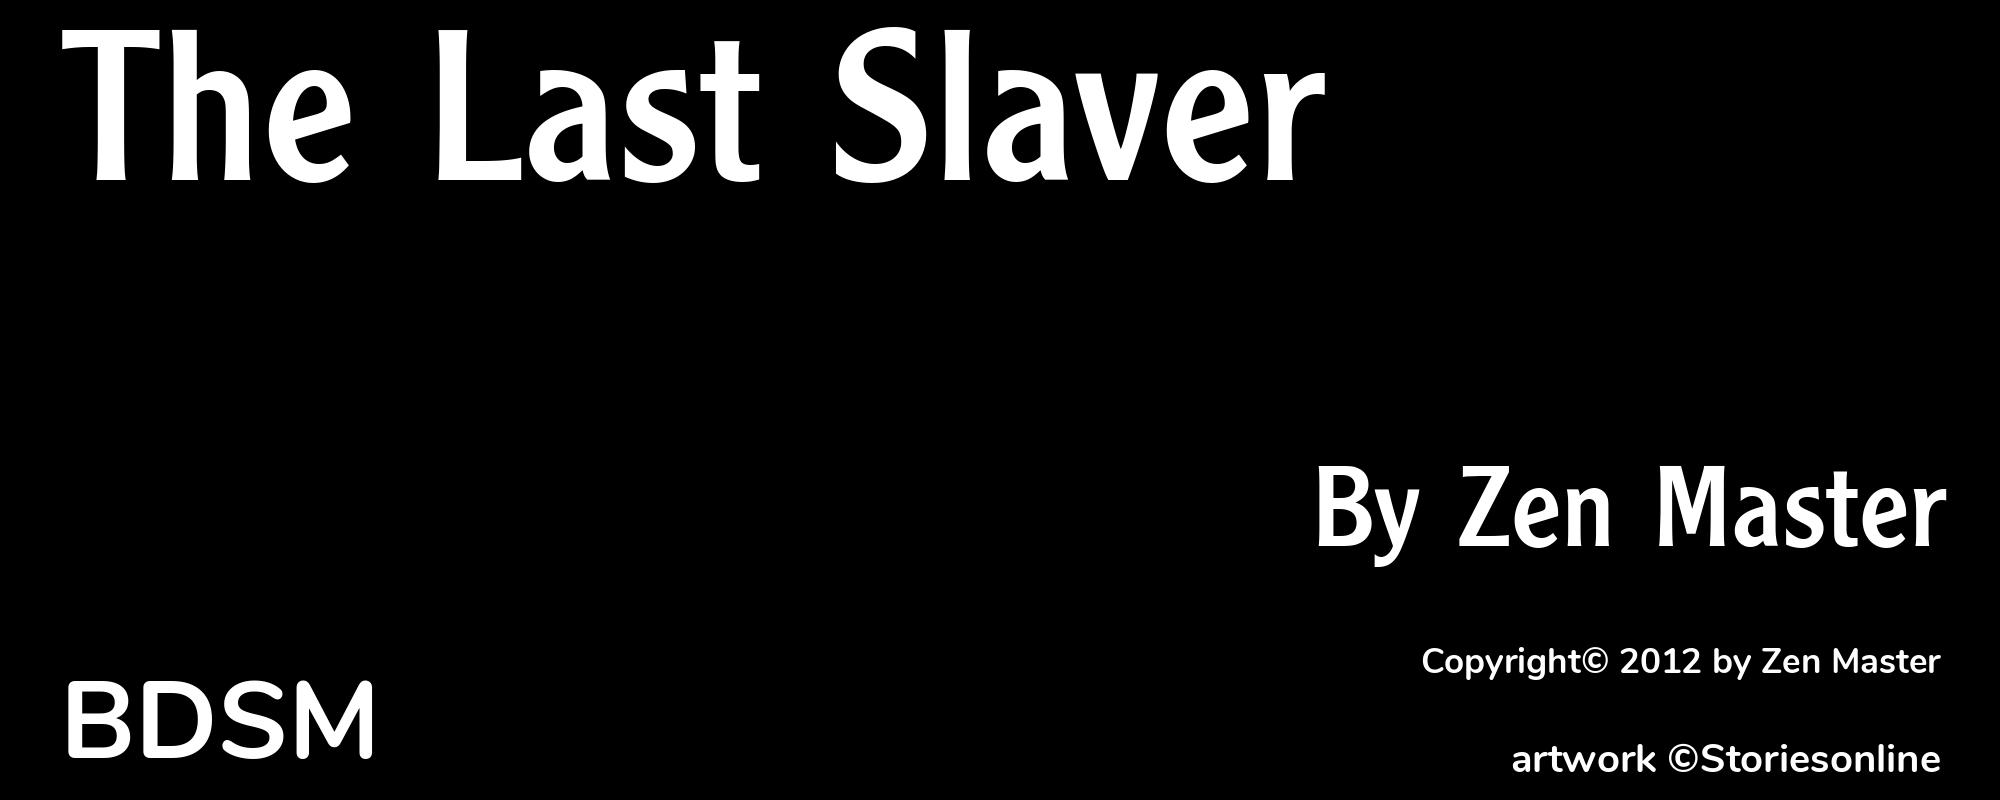 The Last Slaver - Cover